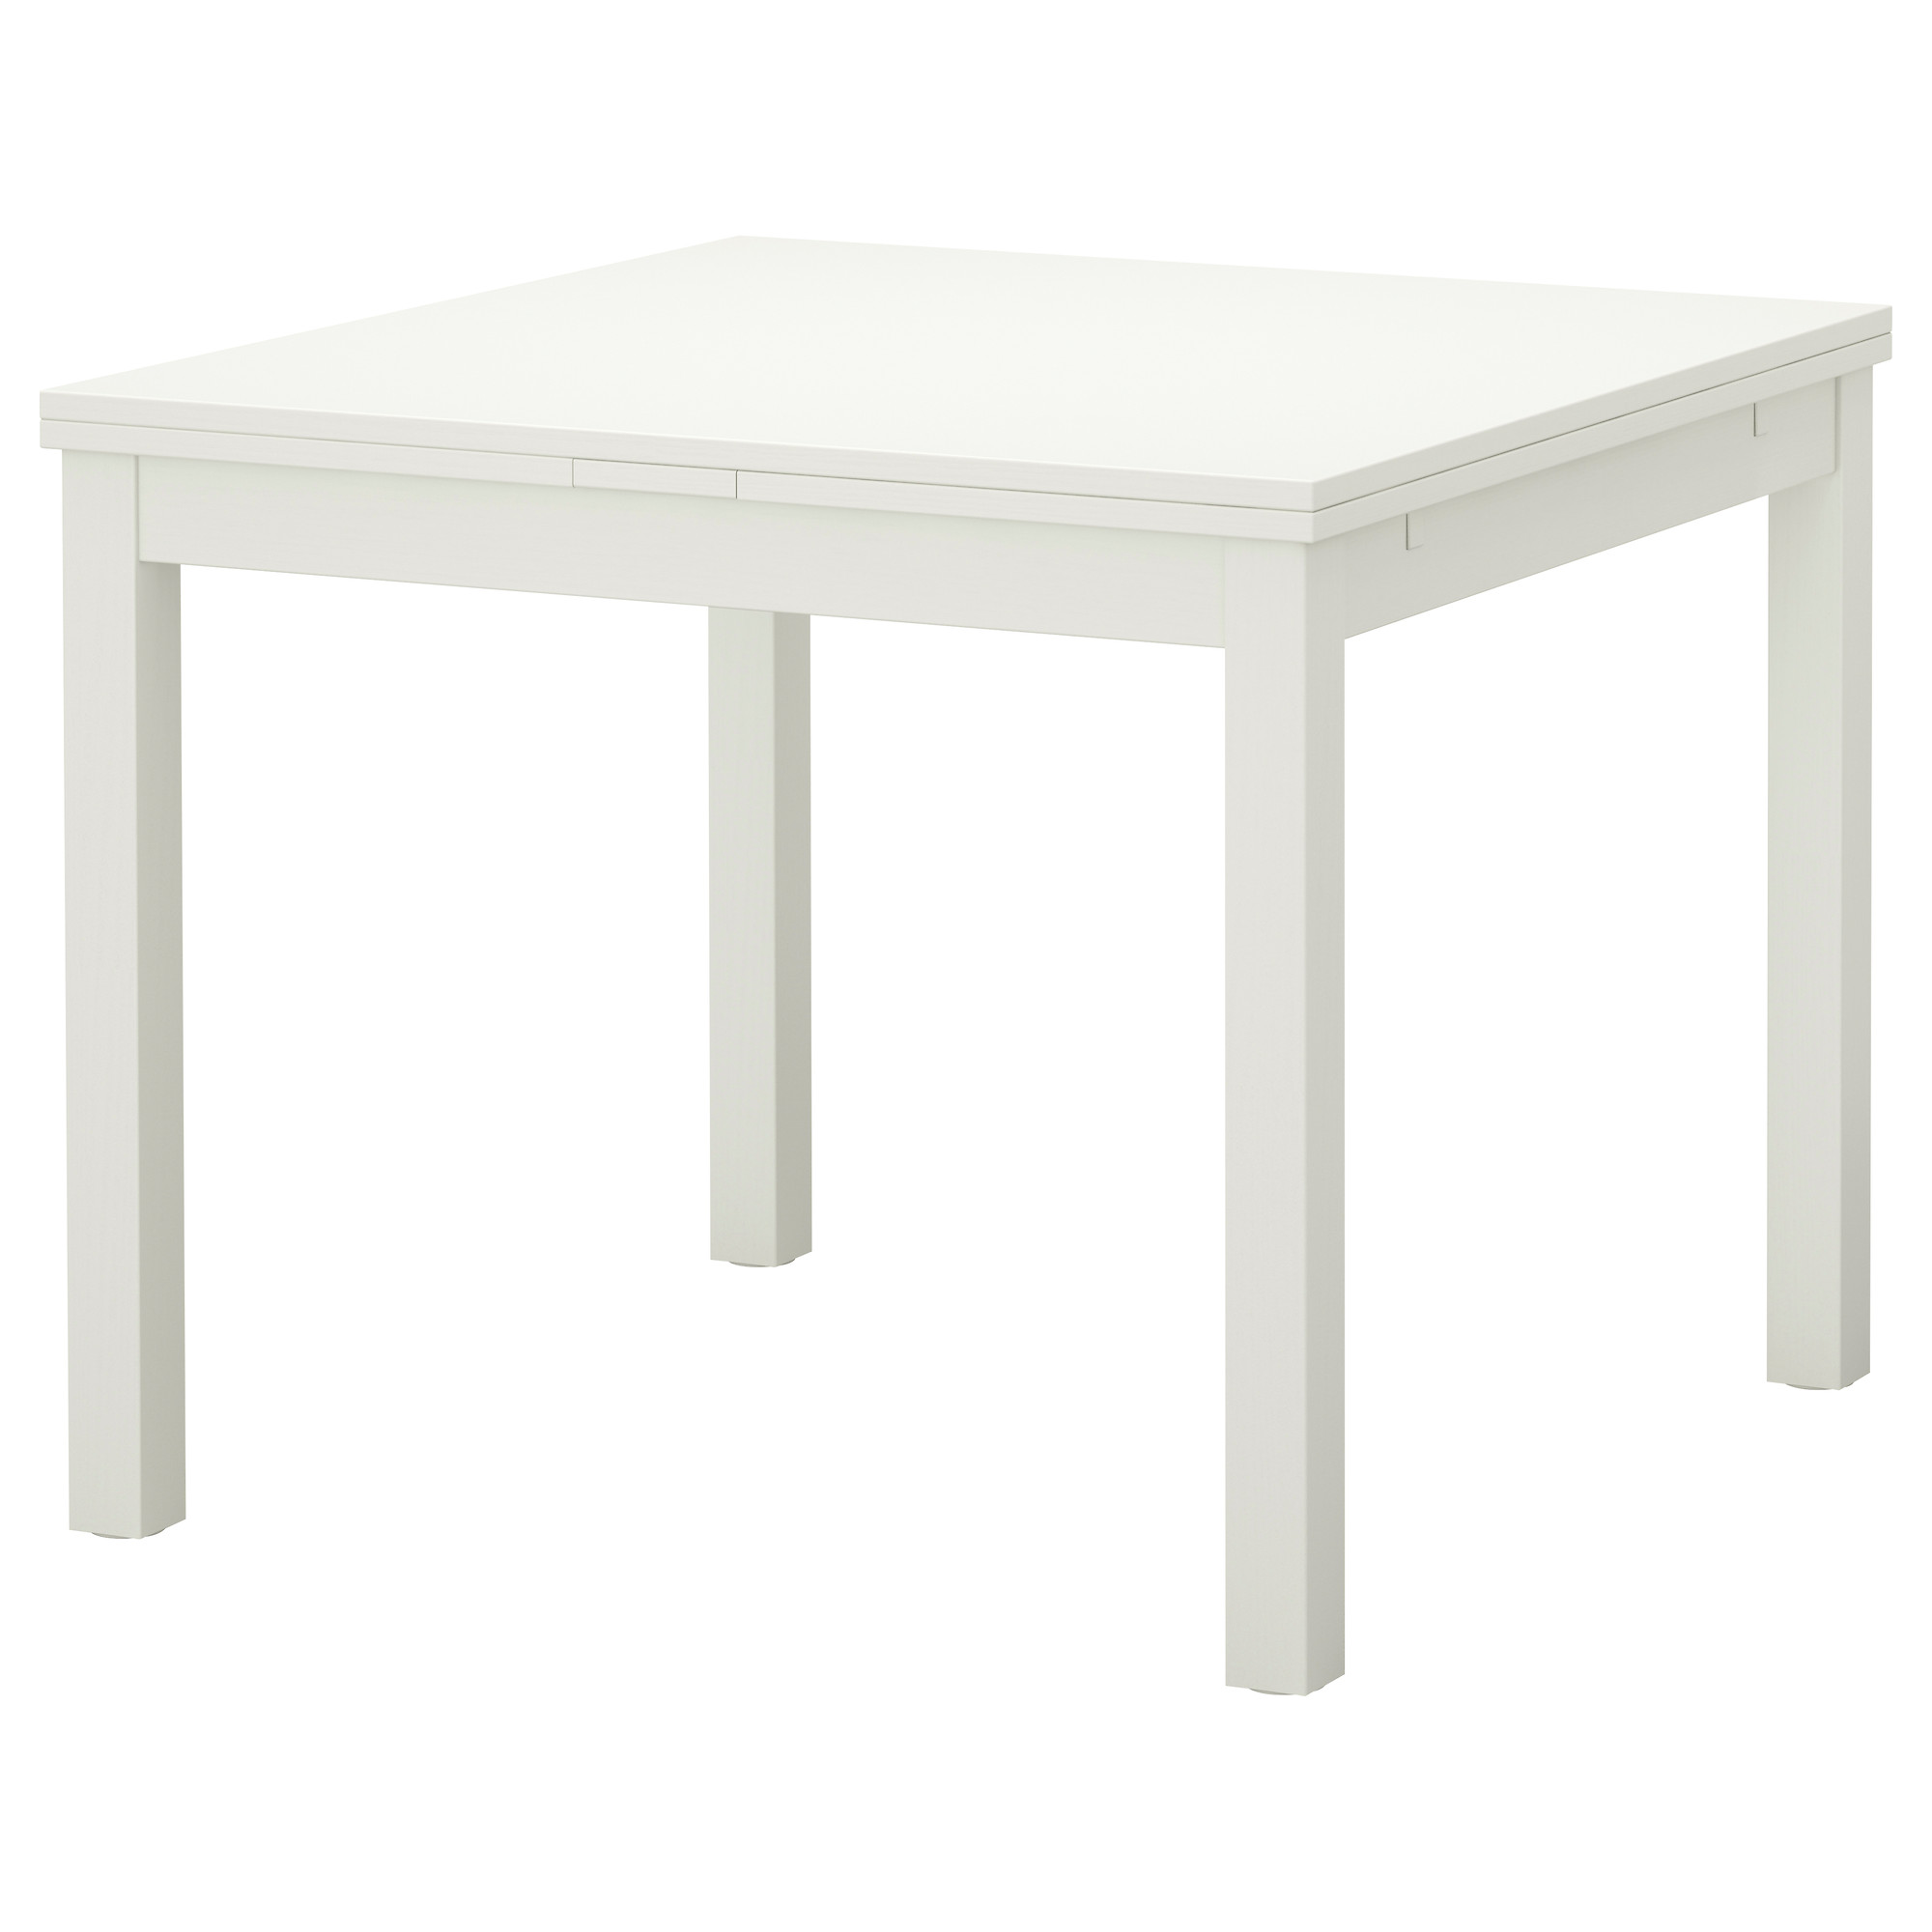 Икеа стол кухонный белый. Melltorp МЕЛЬТОРП стол белый 75x75 см. Стол икеа Bjursta 90. Подстолье ikea Melltorp. Раздвижной стол ikea БЬЮРСТА.